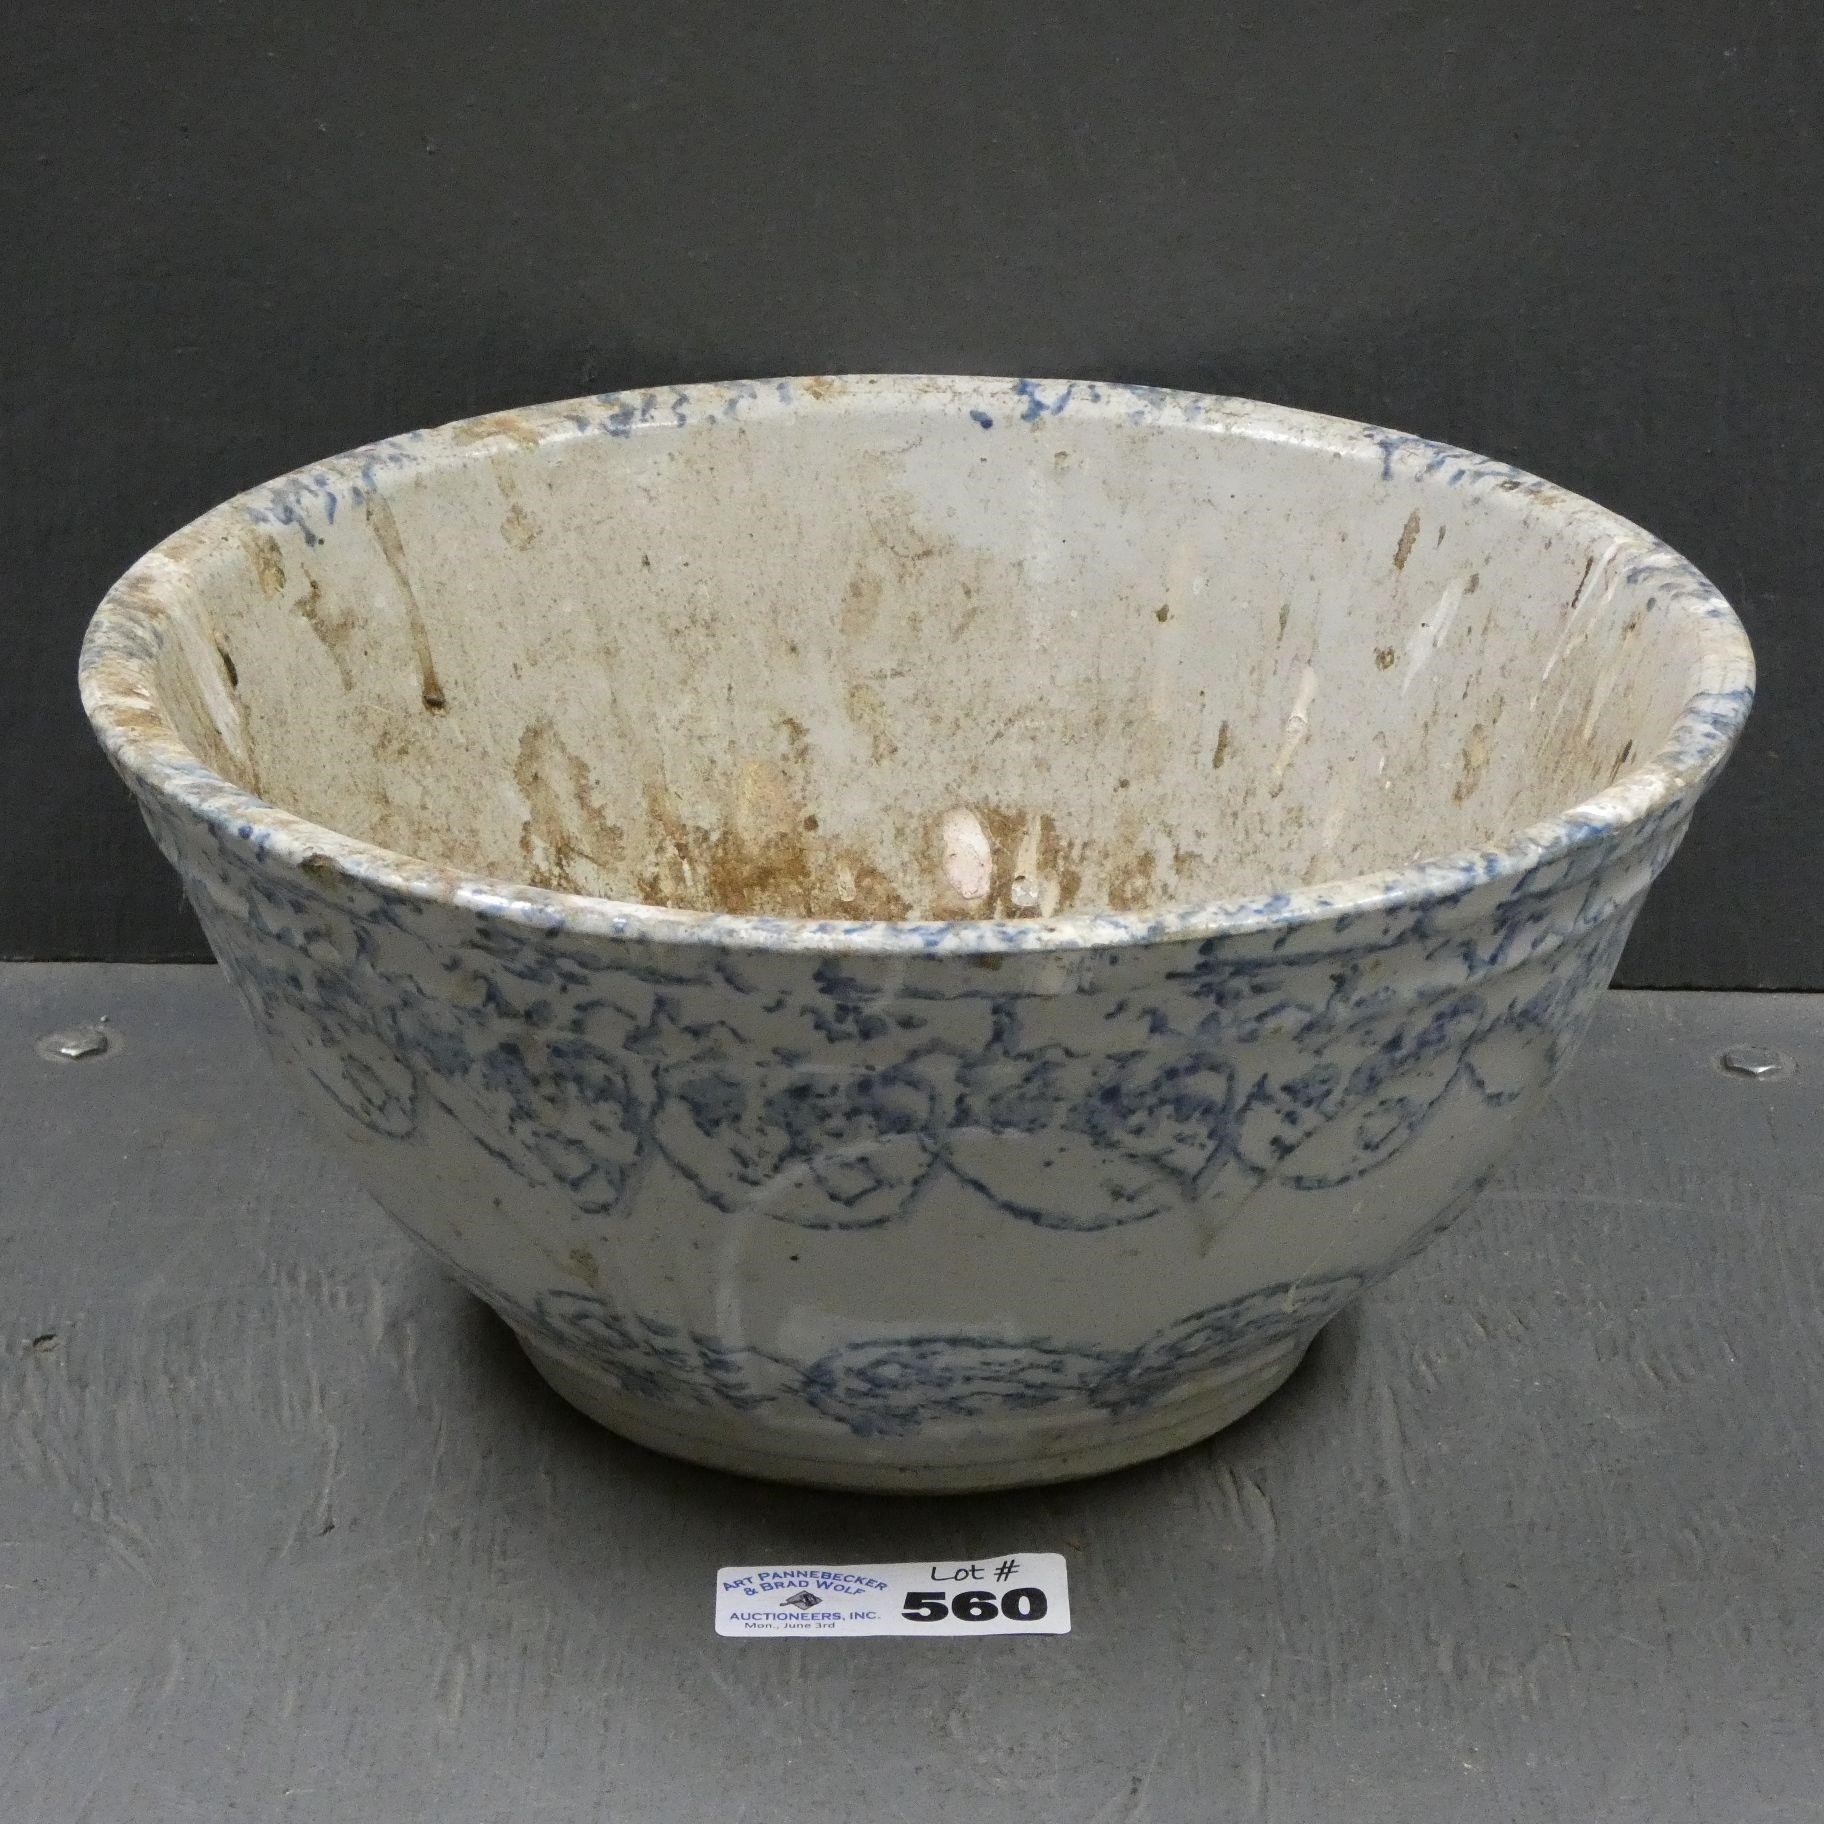 Blue Spongeware Stoneware Mixing Bowl - Cracked